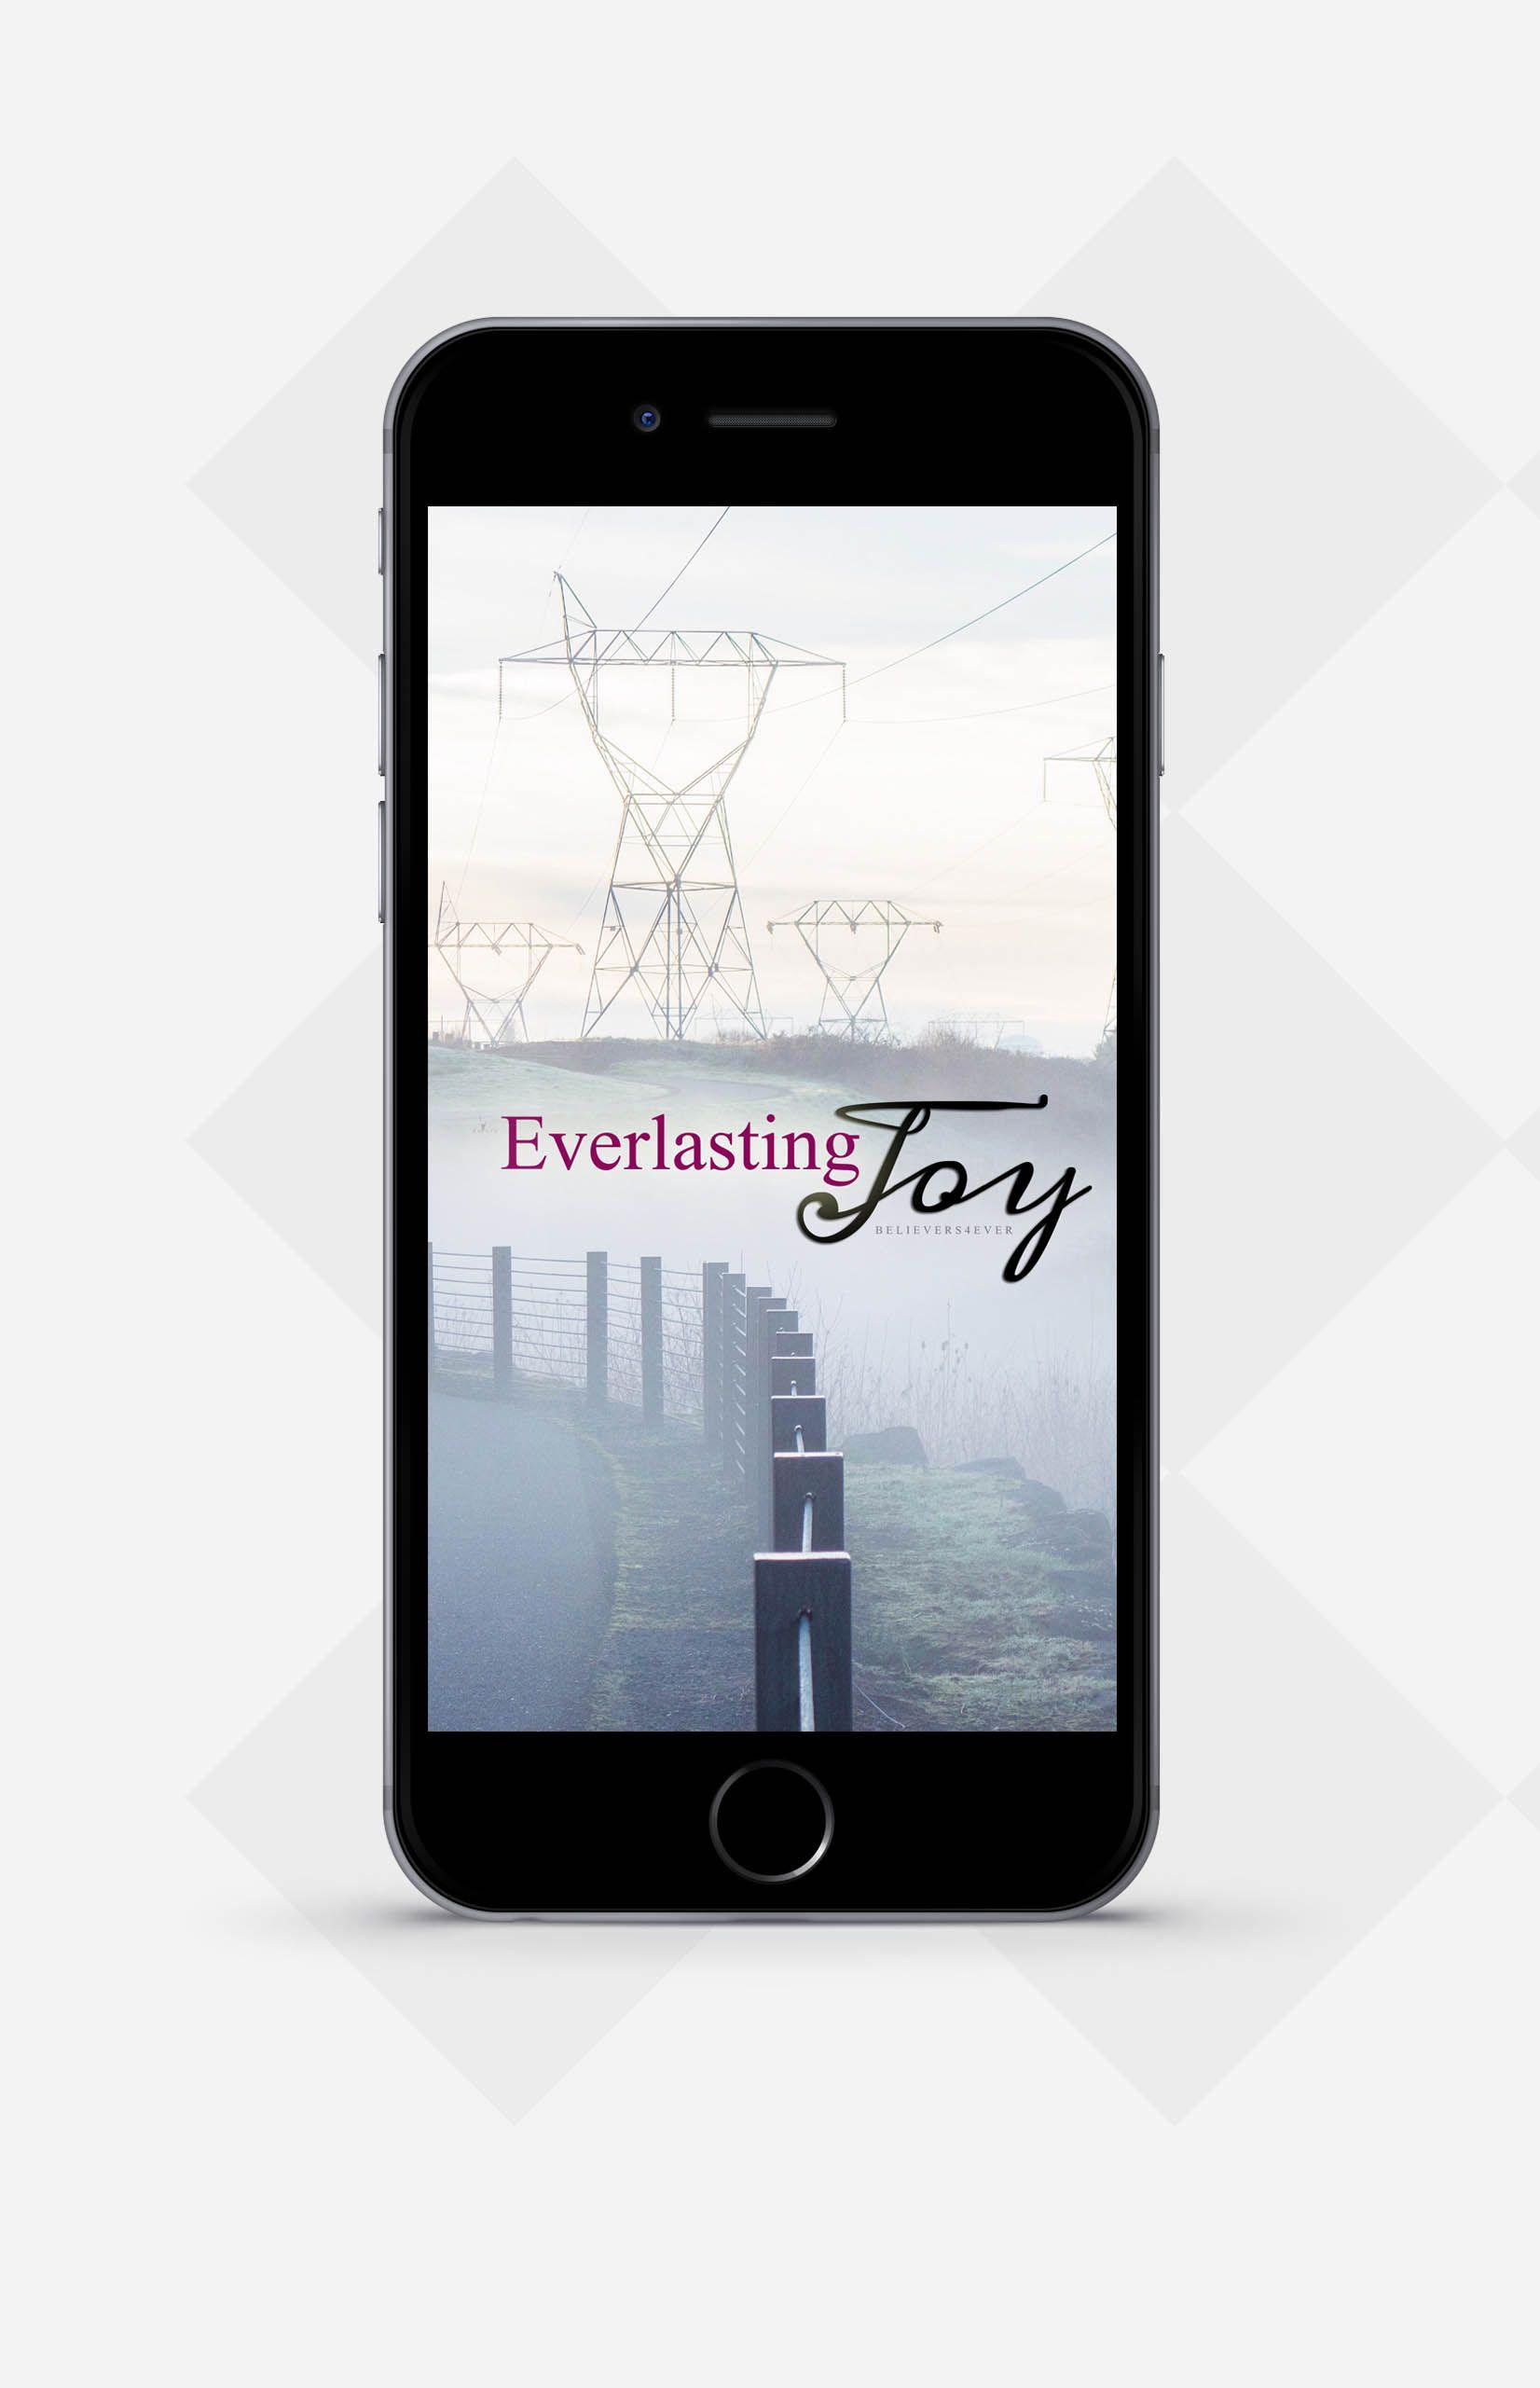 Everlasting joy. Mobile wallpaper and Wallpaper